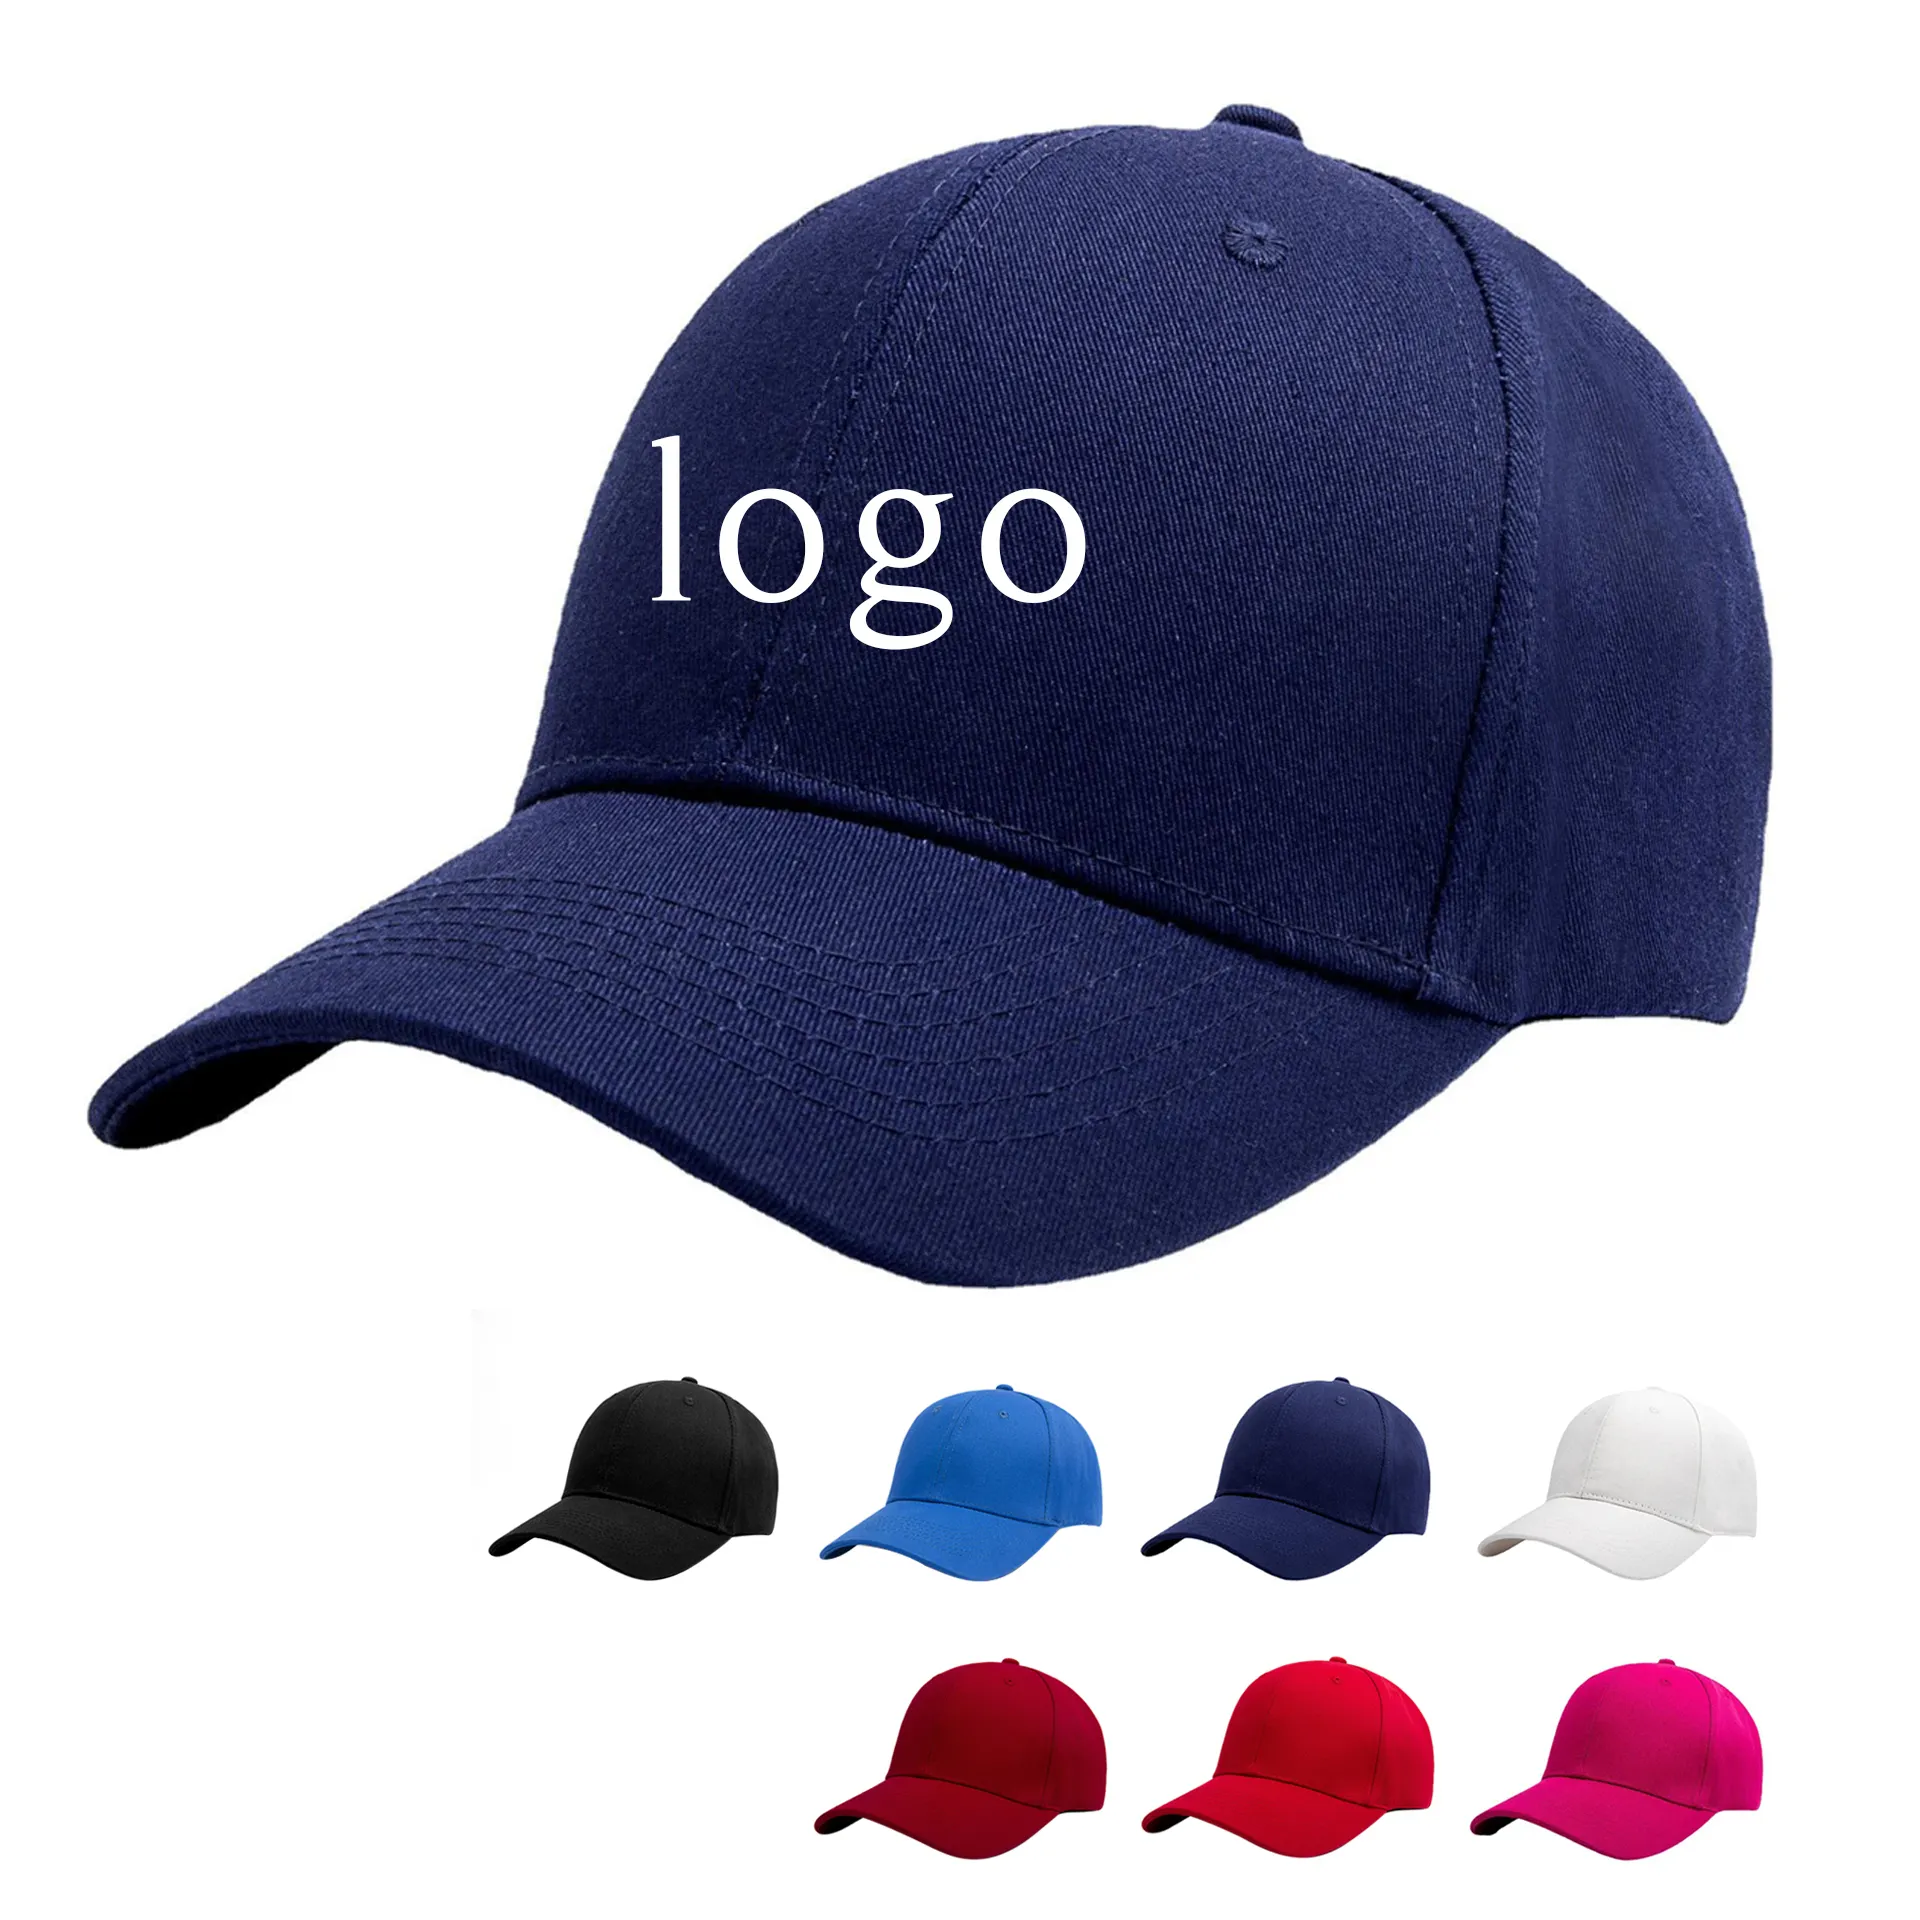 Boné de beisebol promocional unisex para homens, chapéu unisex totalmente personalizado com bordado 3D azul marinho, em estoque por atacado